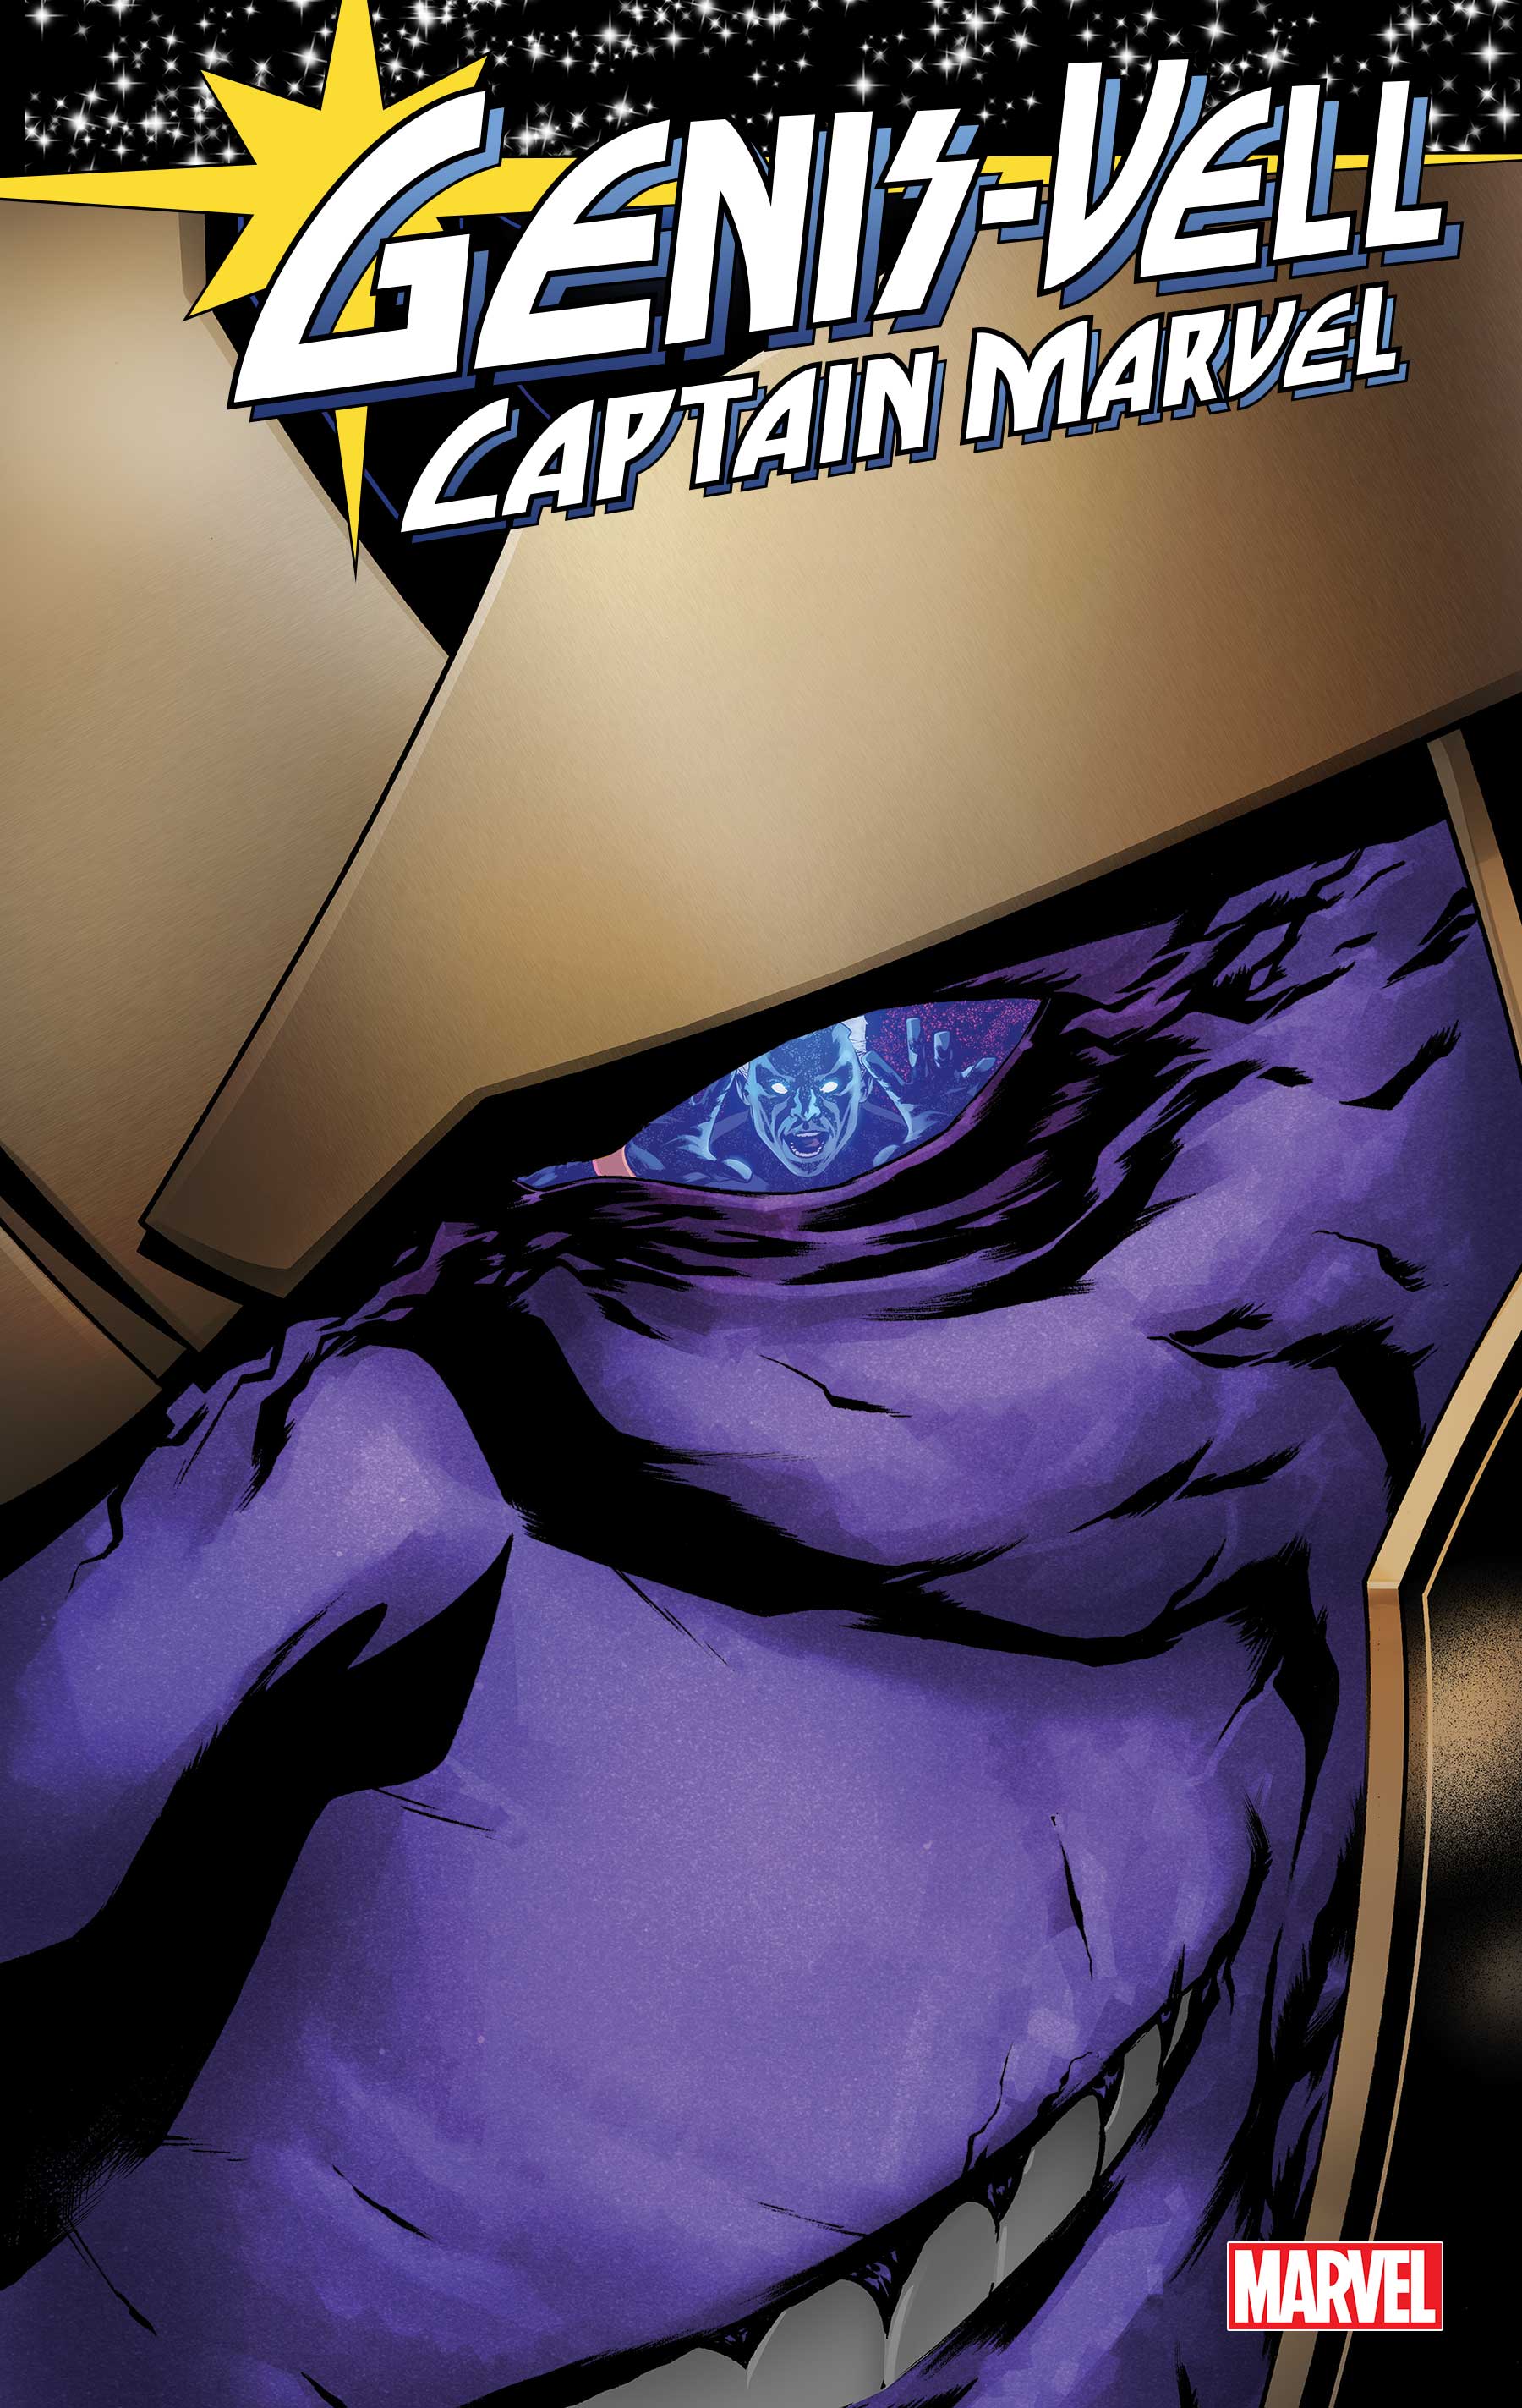 Genis-Vell: Captain Marvel (2022) #2